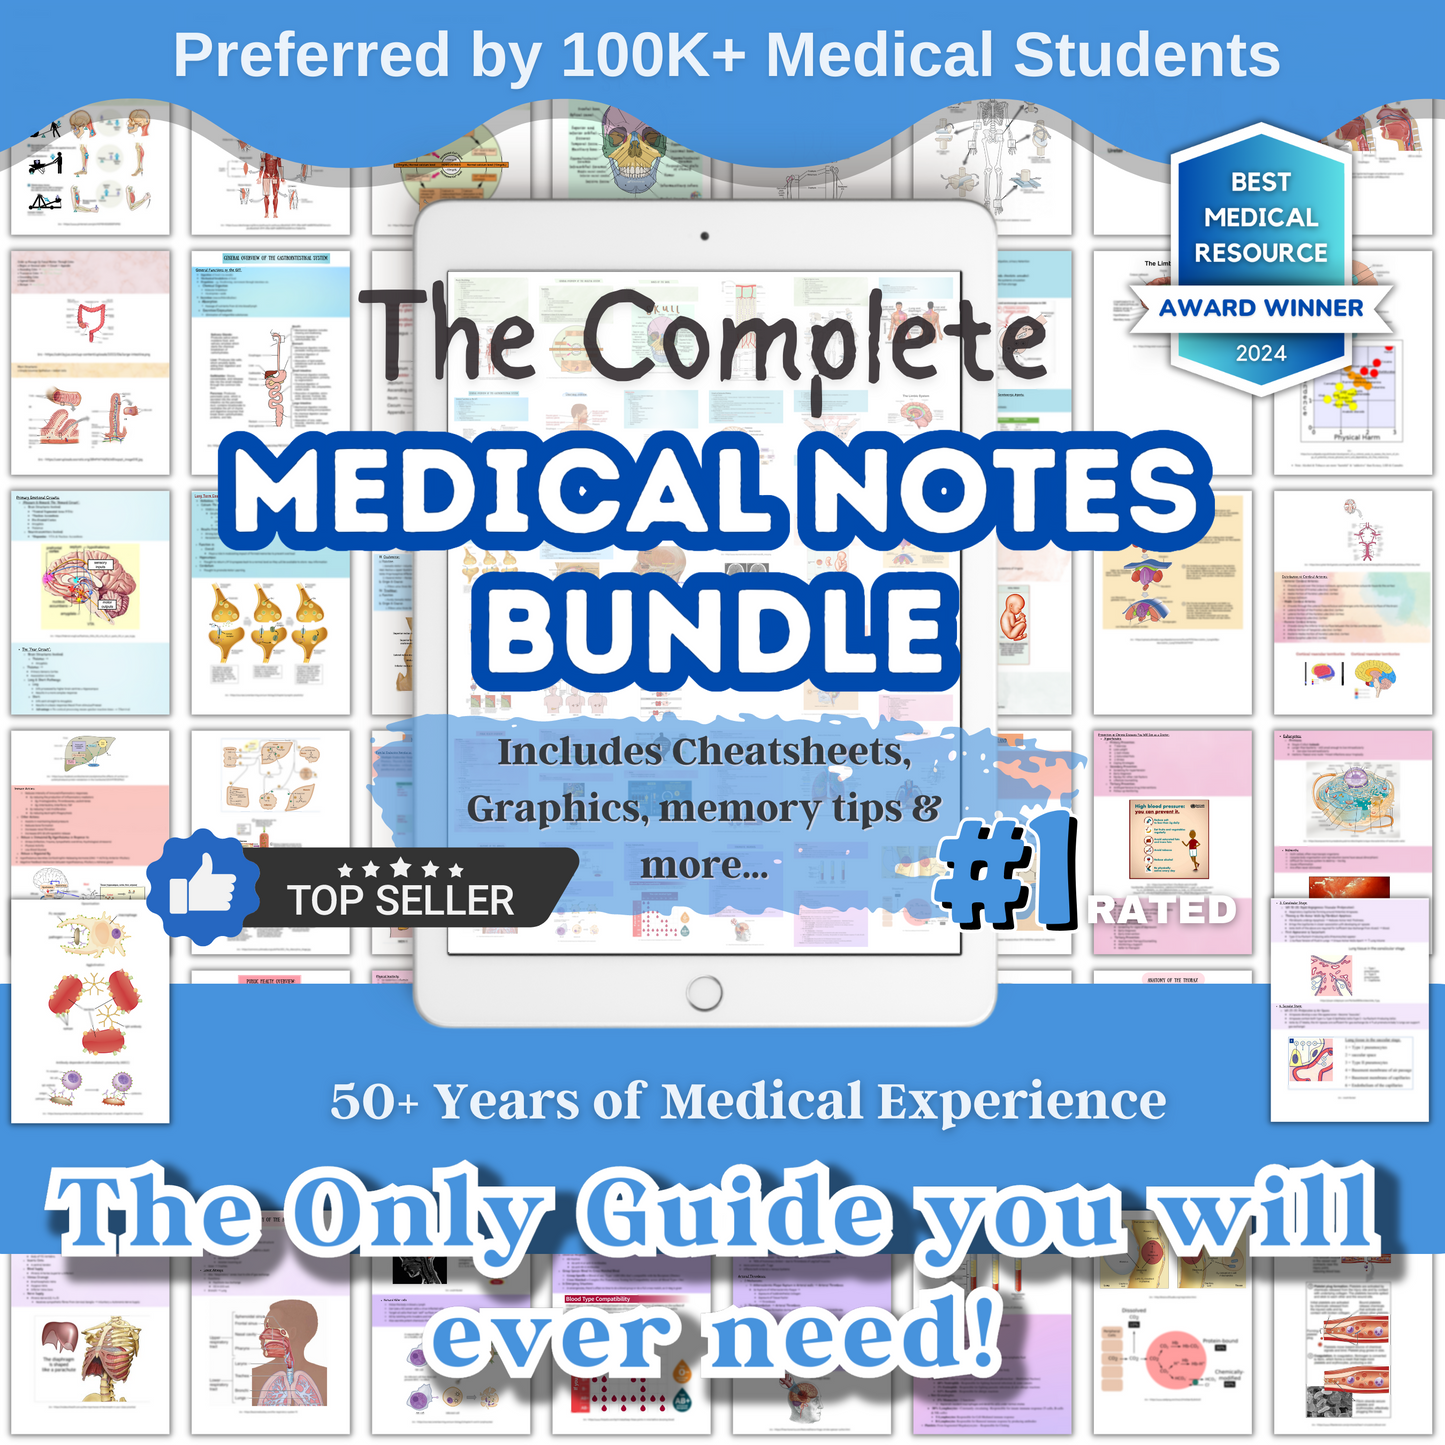 The Complete Med School Bundle™